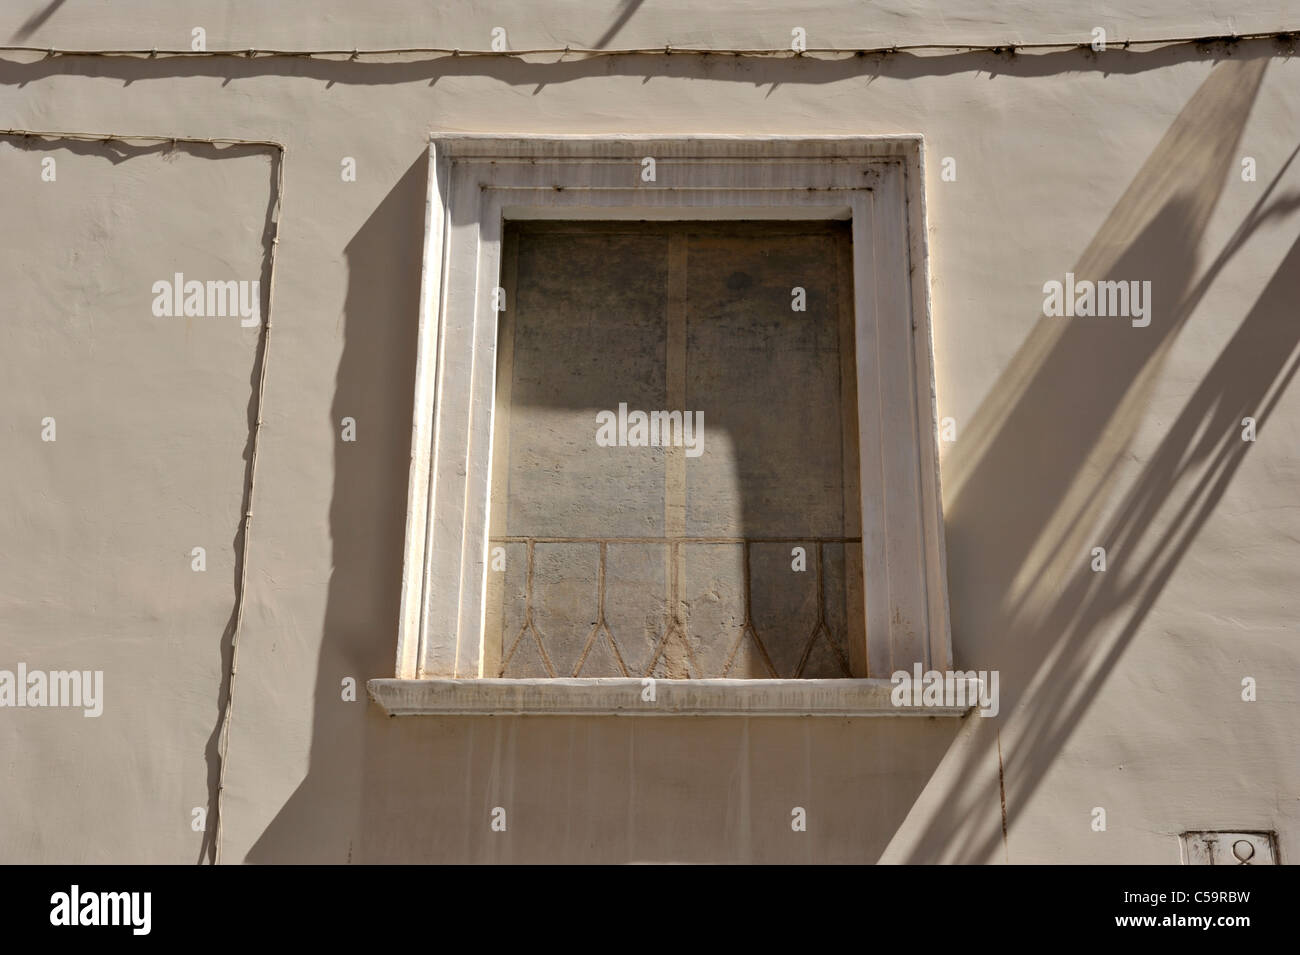 Ittaly, Rome, Ghetto juif, Palazzo di Giacomo Mattei, a briqué la fenêtre trompe l'oeil Banque D'Images